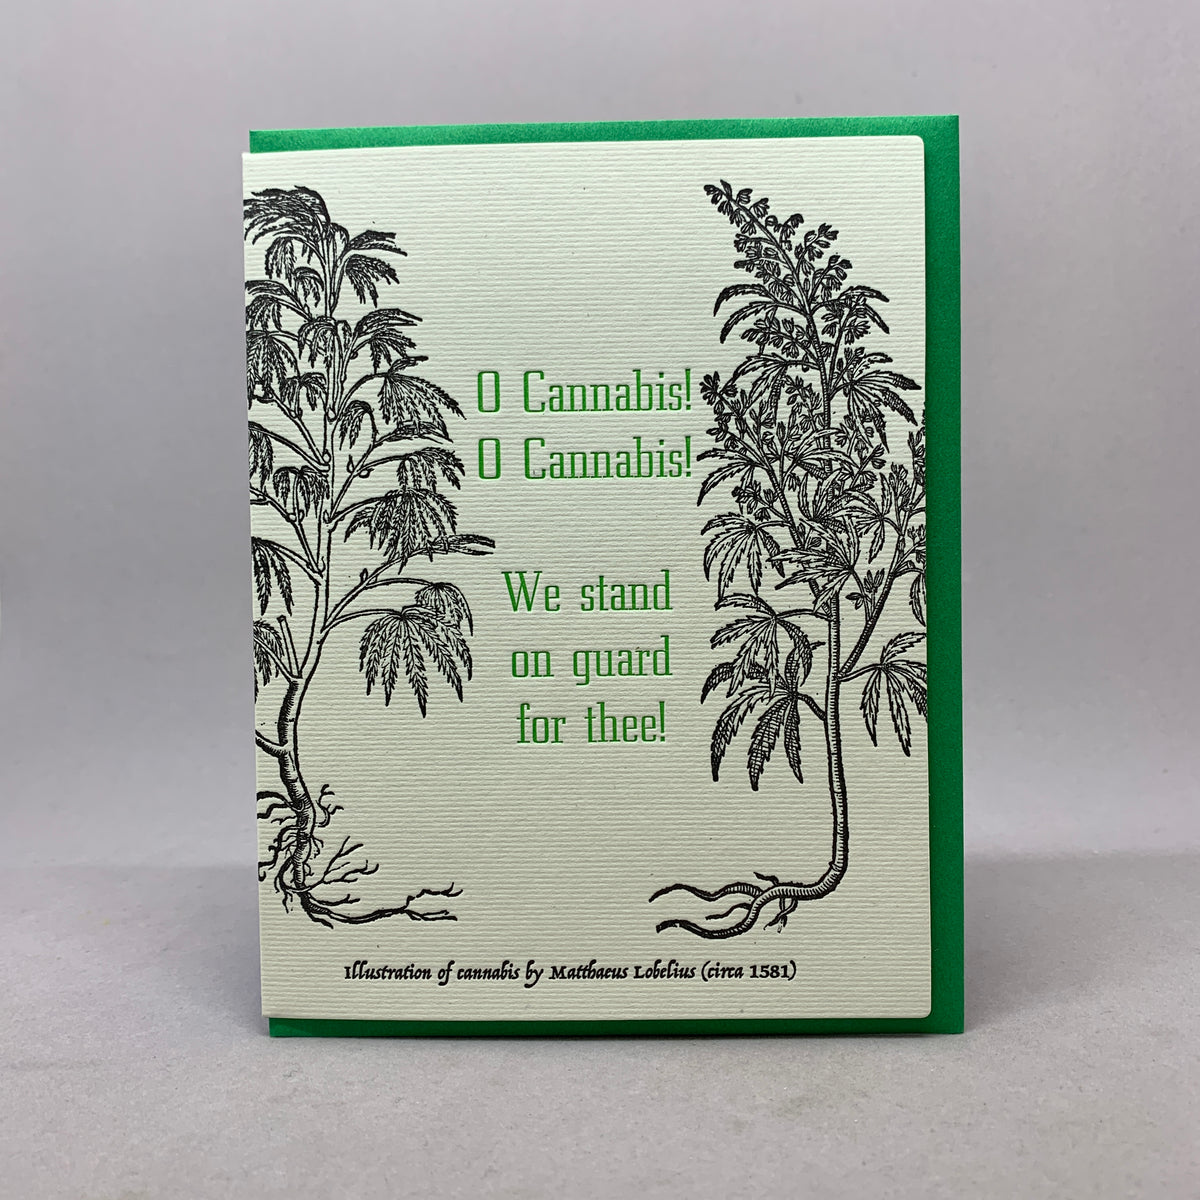 O Cannabis!